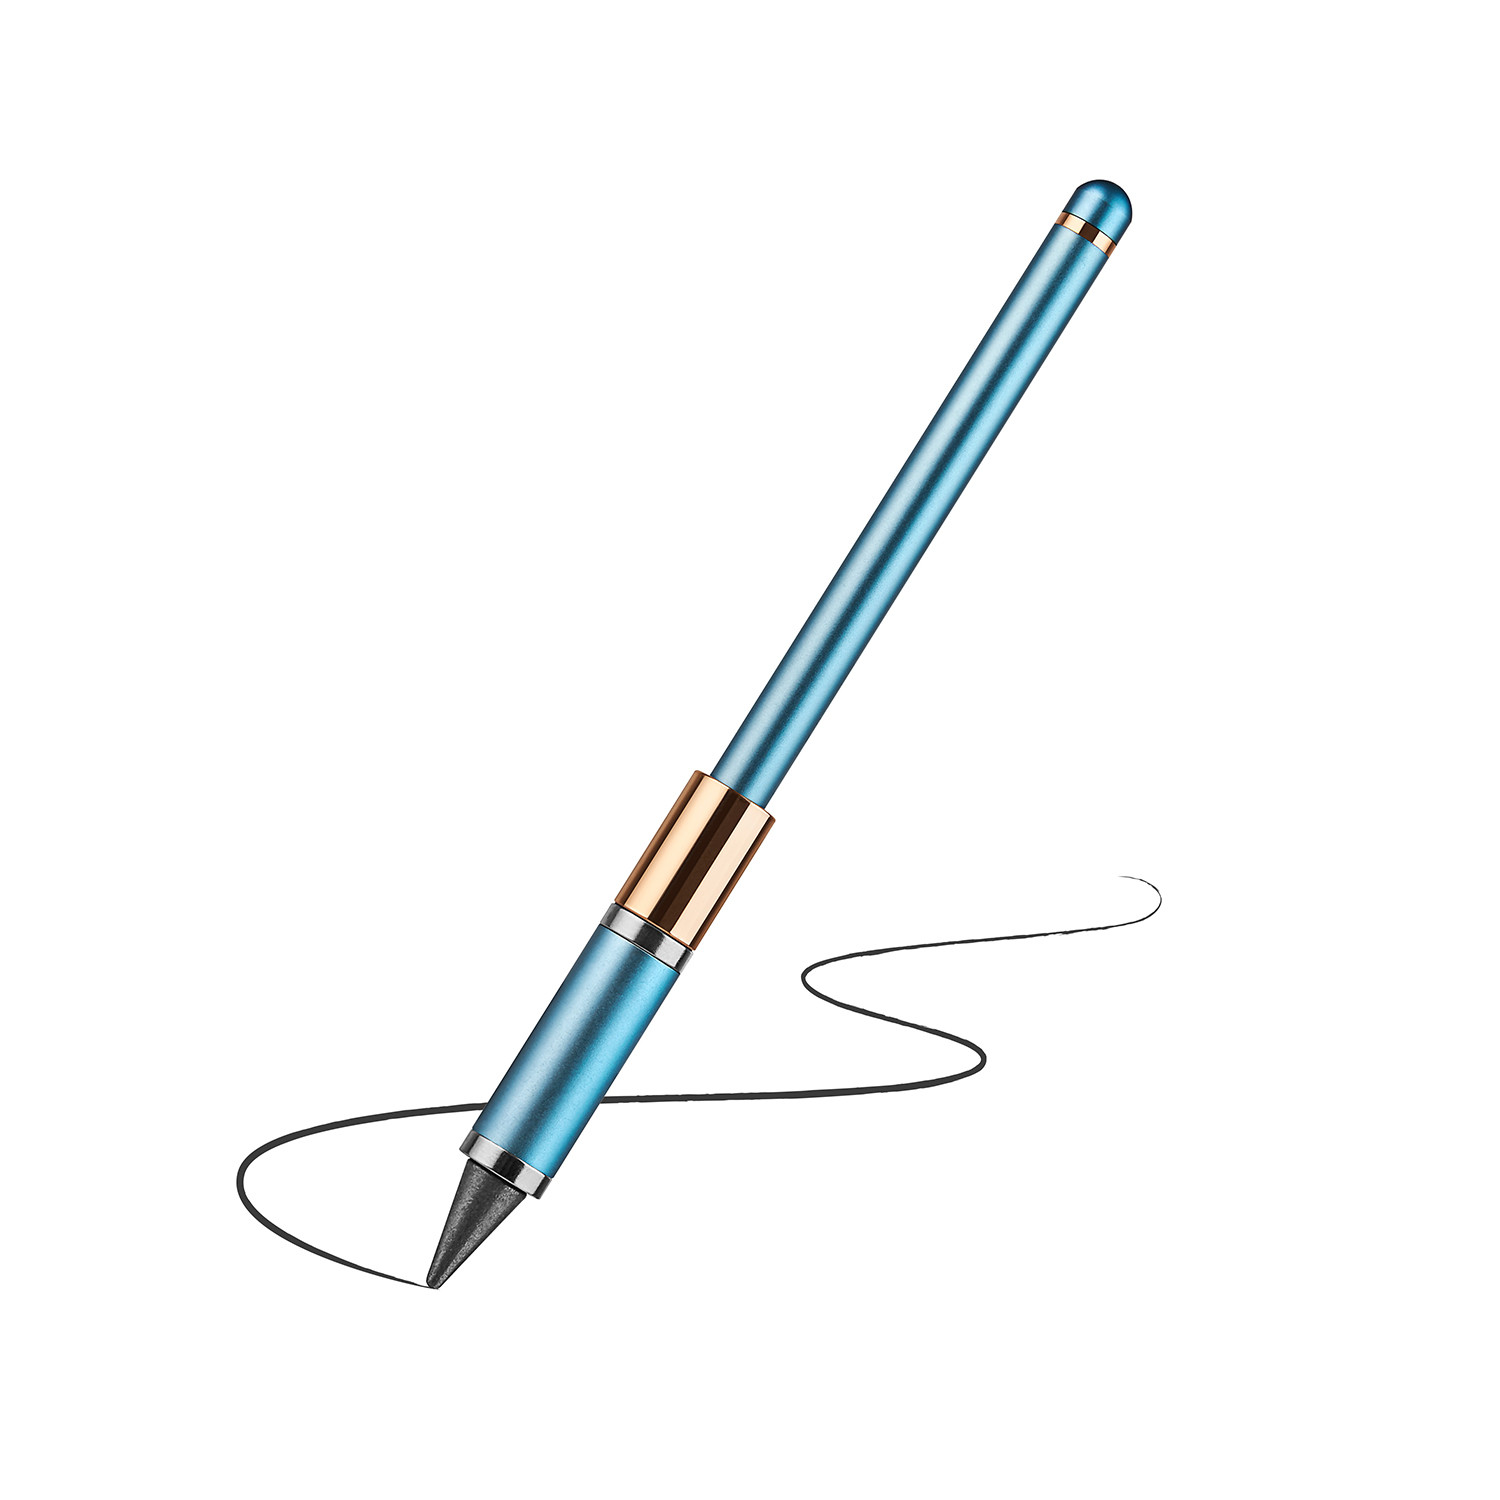 Metal alloy tip inkless pen